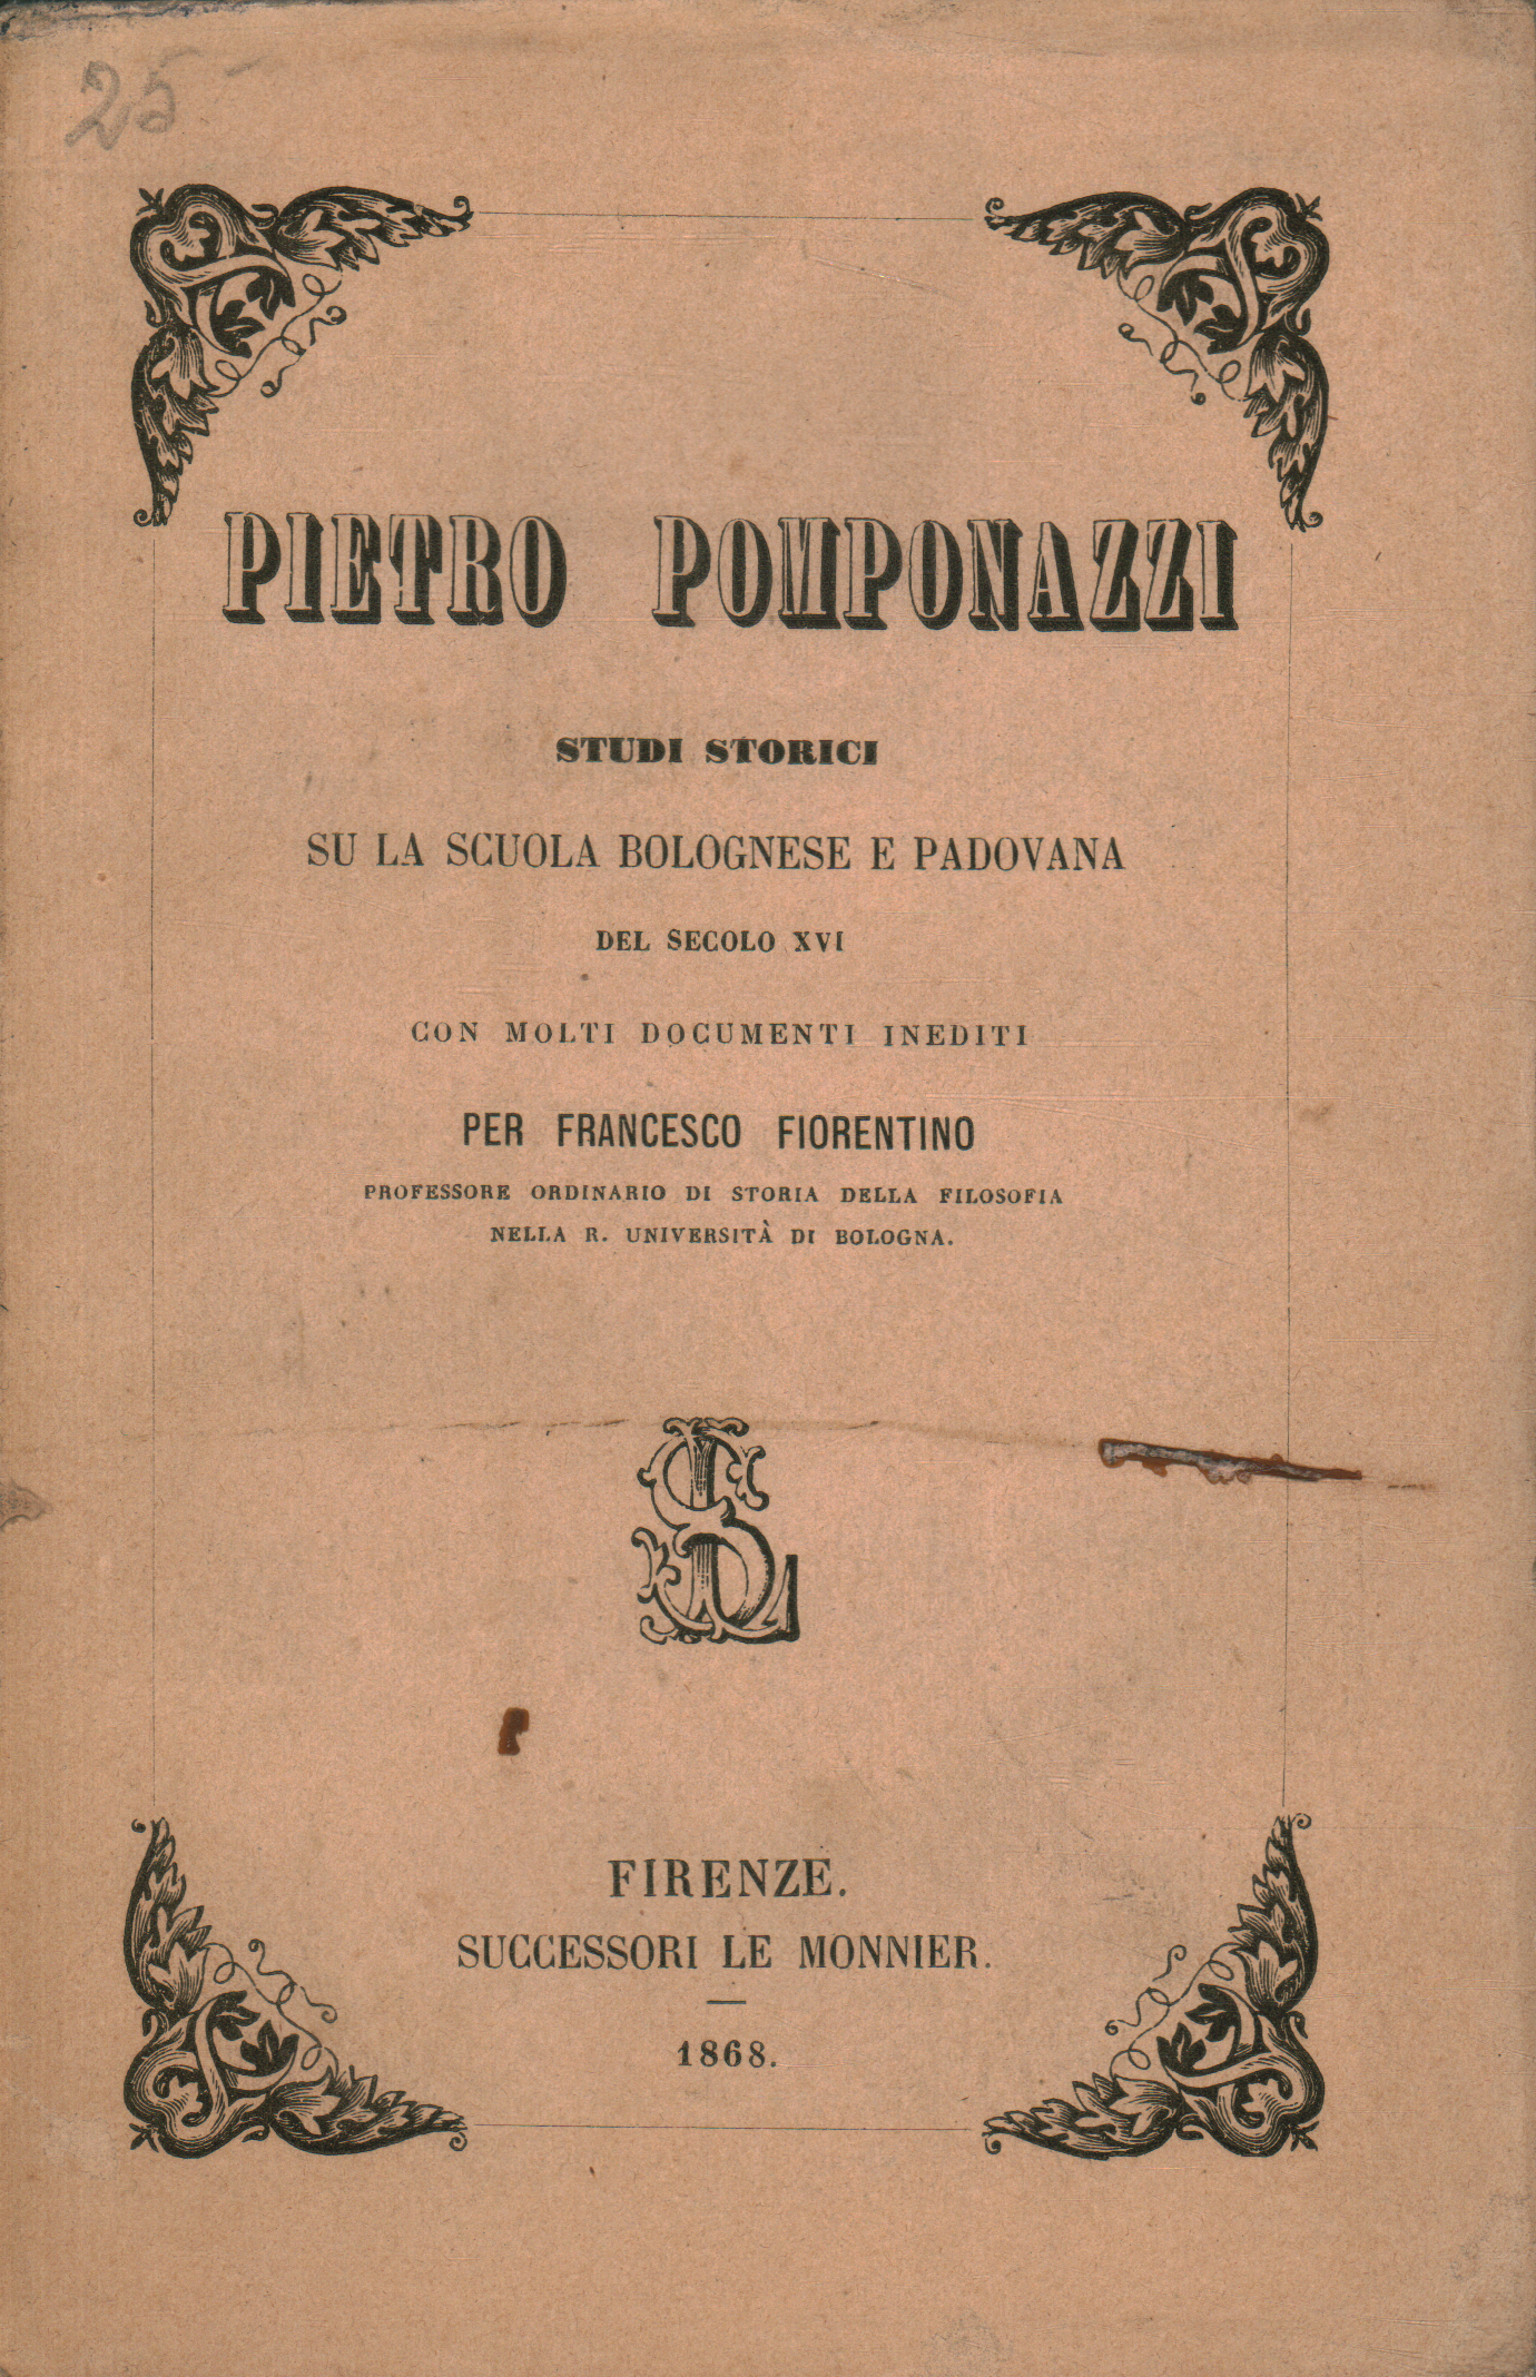 Pietro Pomponazzi. Etudes historiques sur le % 2, Pietro Pomponazzi. Etudes historiques sur le% 2